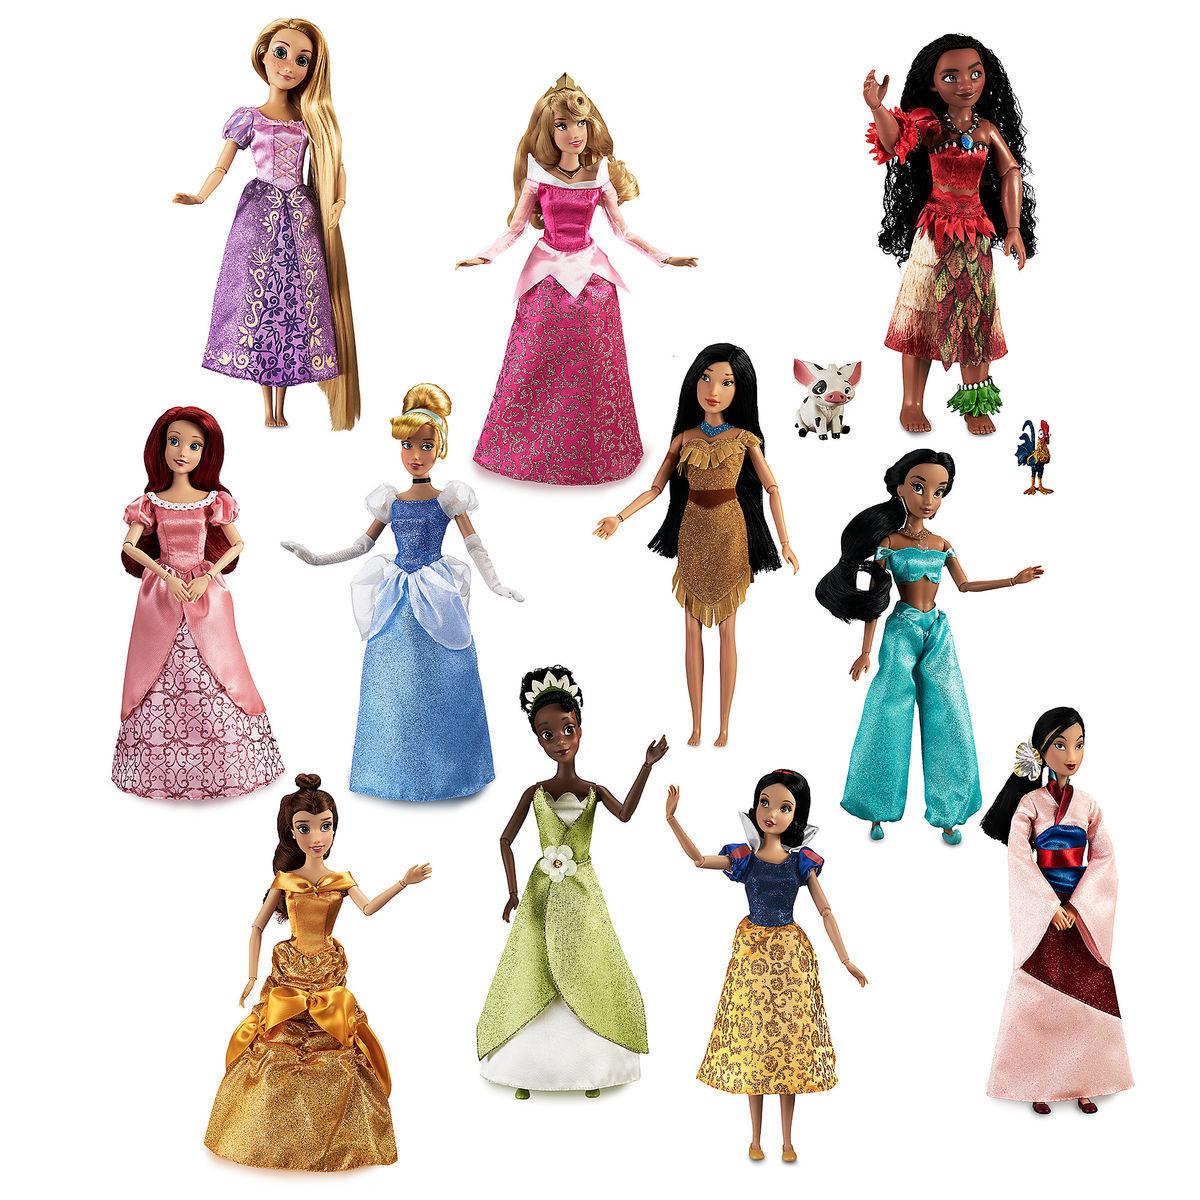 Disney Store Princess Doll Gift Set 11'' Collection Ariel Belle Jasmine Aurora